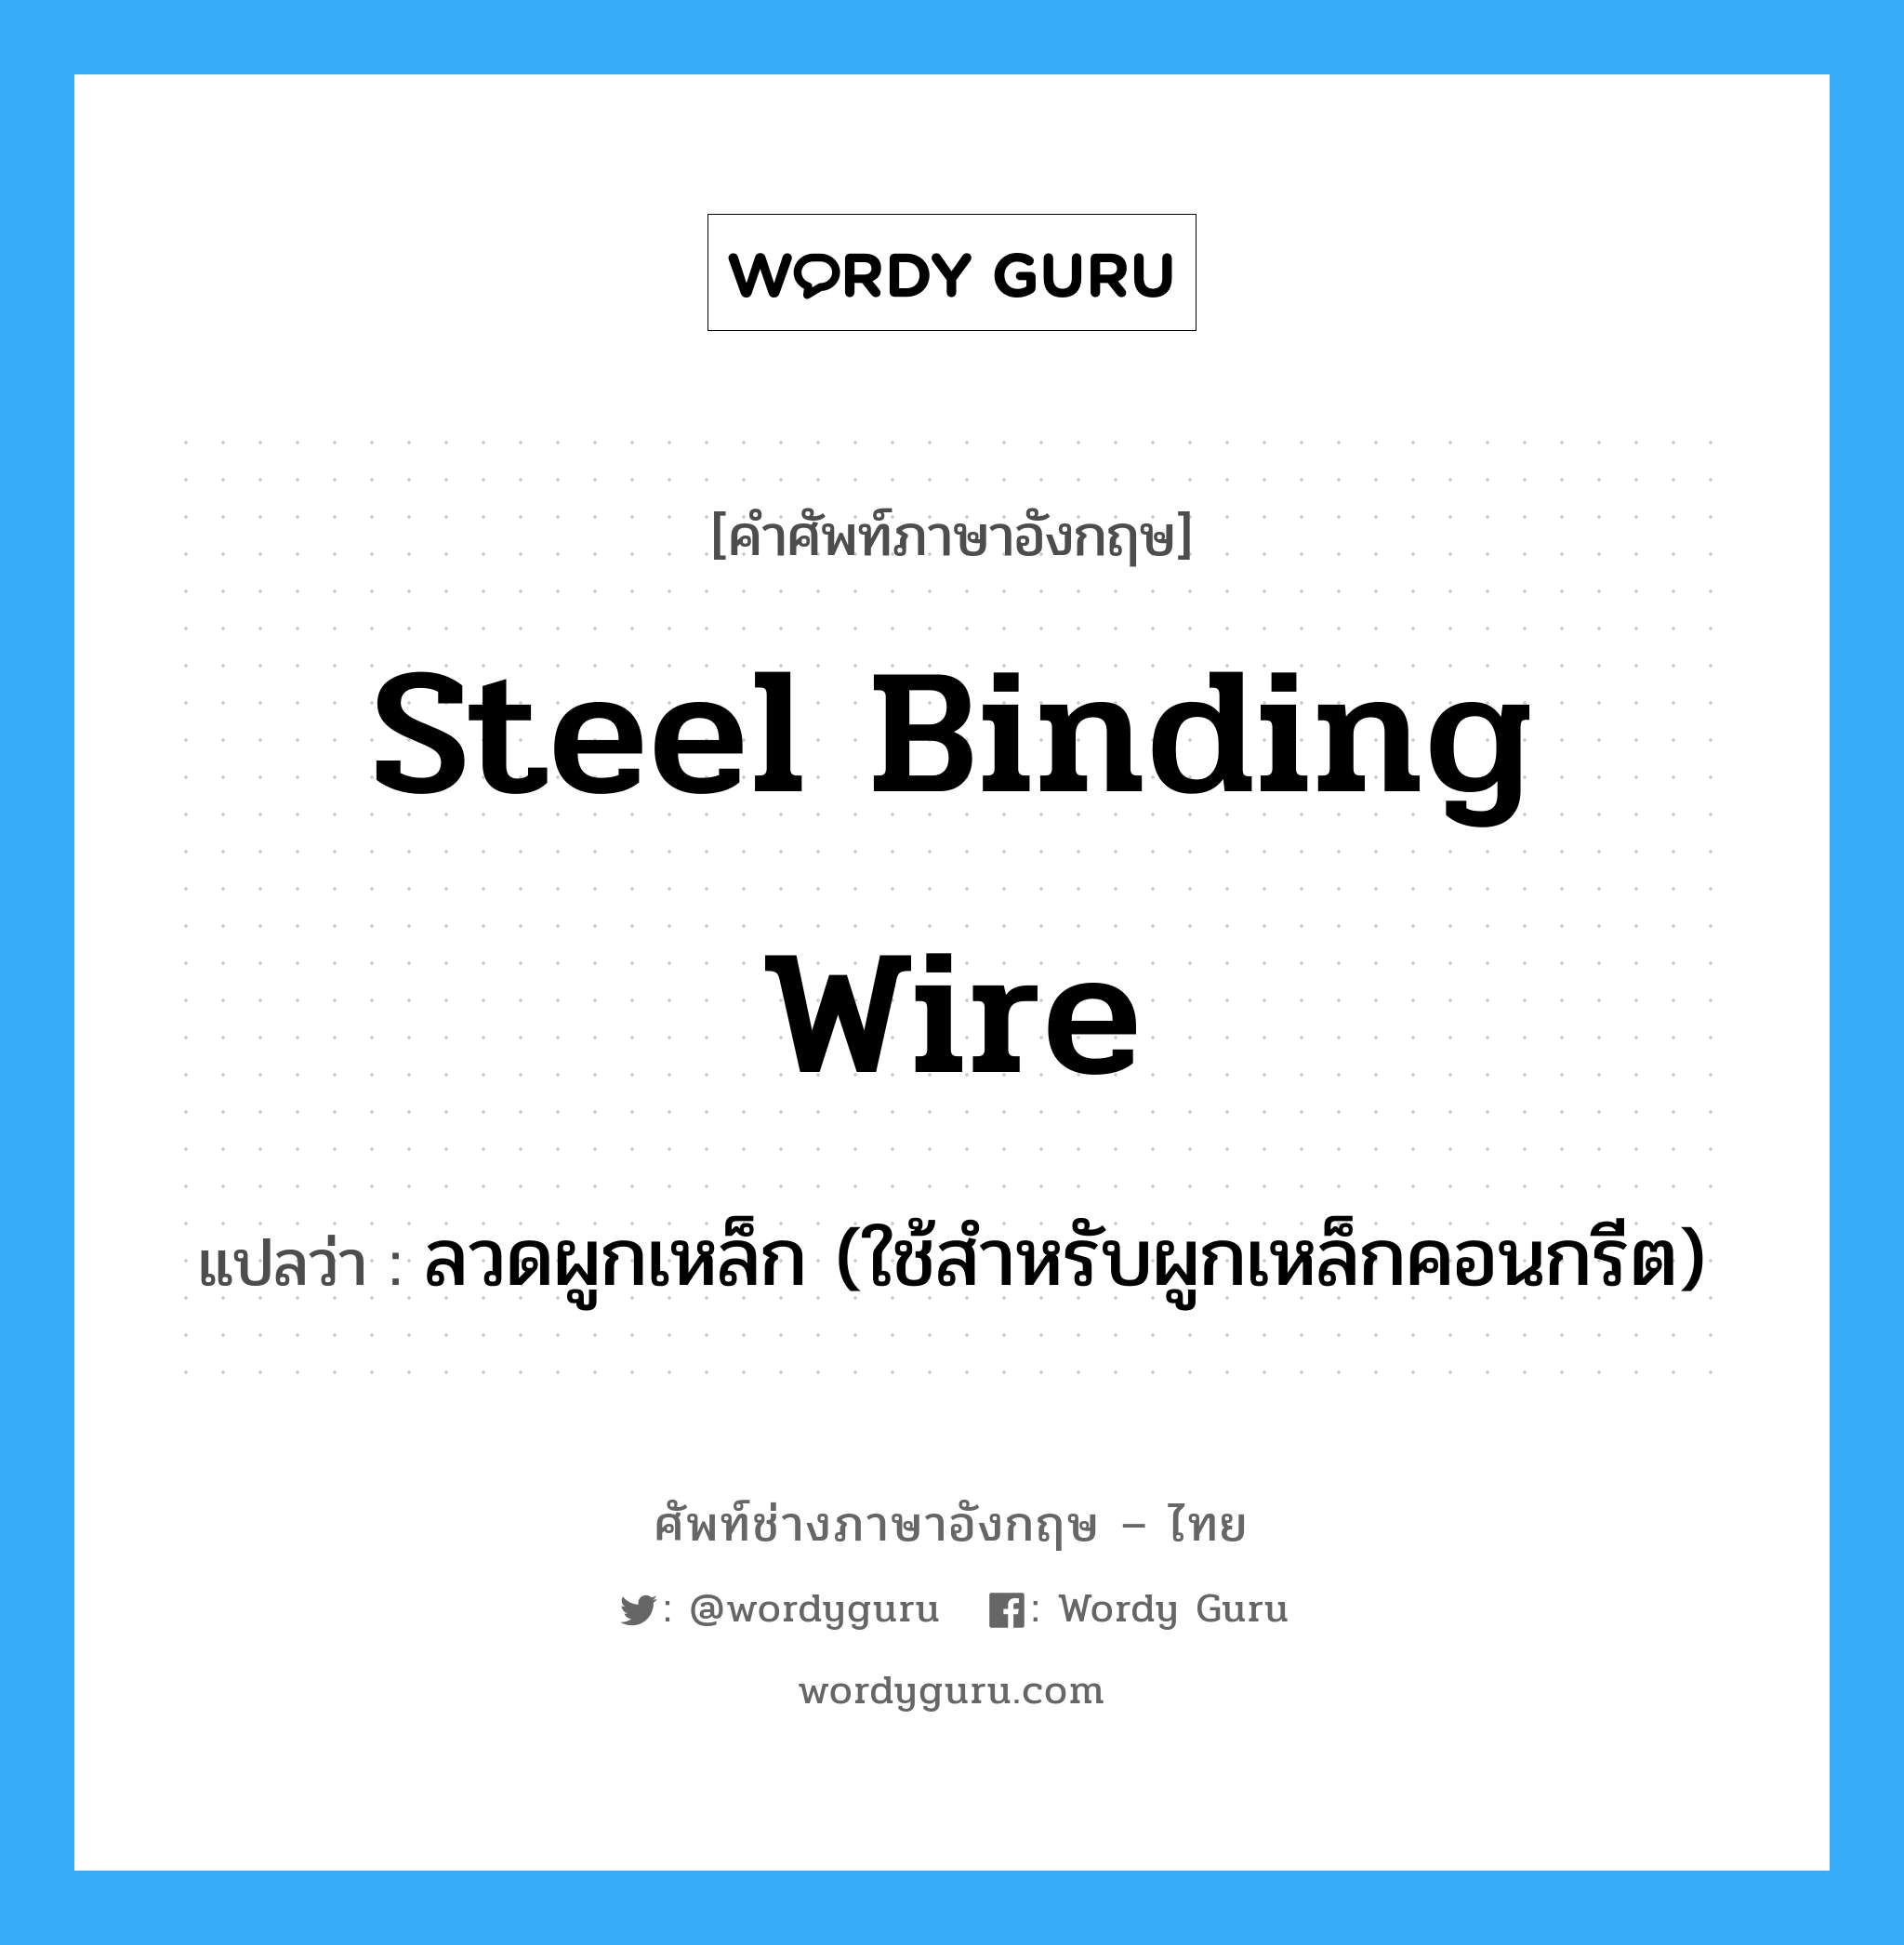 steel binding wire แปลว่า?, คำศัพท์ช่างภาษาอังกฤษ - ไทย steel binding wire คำศัพท์ภาษาอังกฤษ steel binding wire แปลว่า ลวดผูกเหล็ก (ใช้สำหรับผูกเหล็กคอนกรีต)